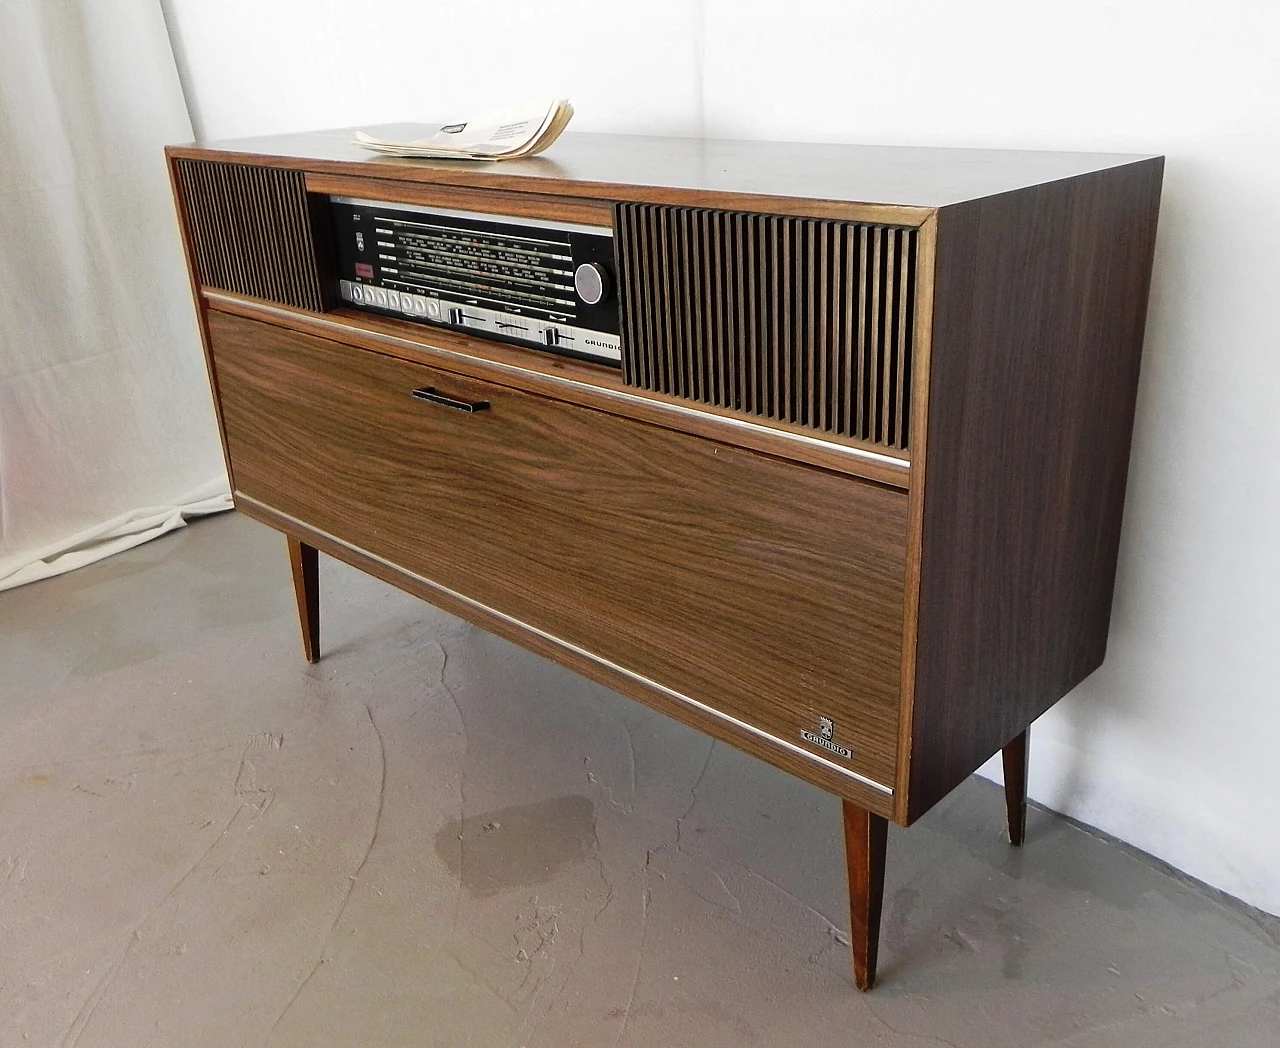 Grundig Mandello 6 turntable radio, 1970s 15